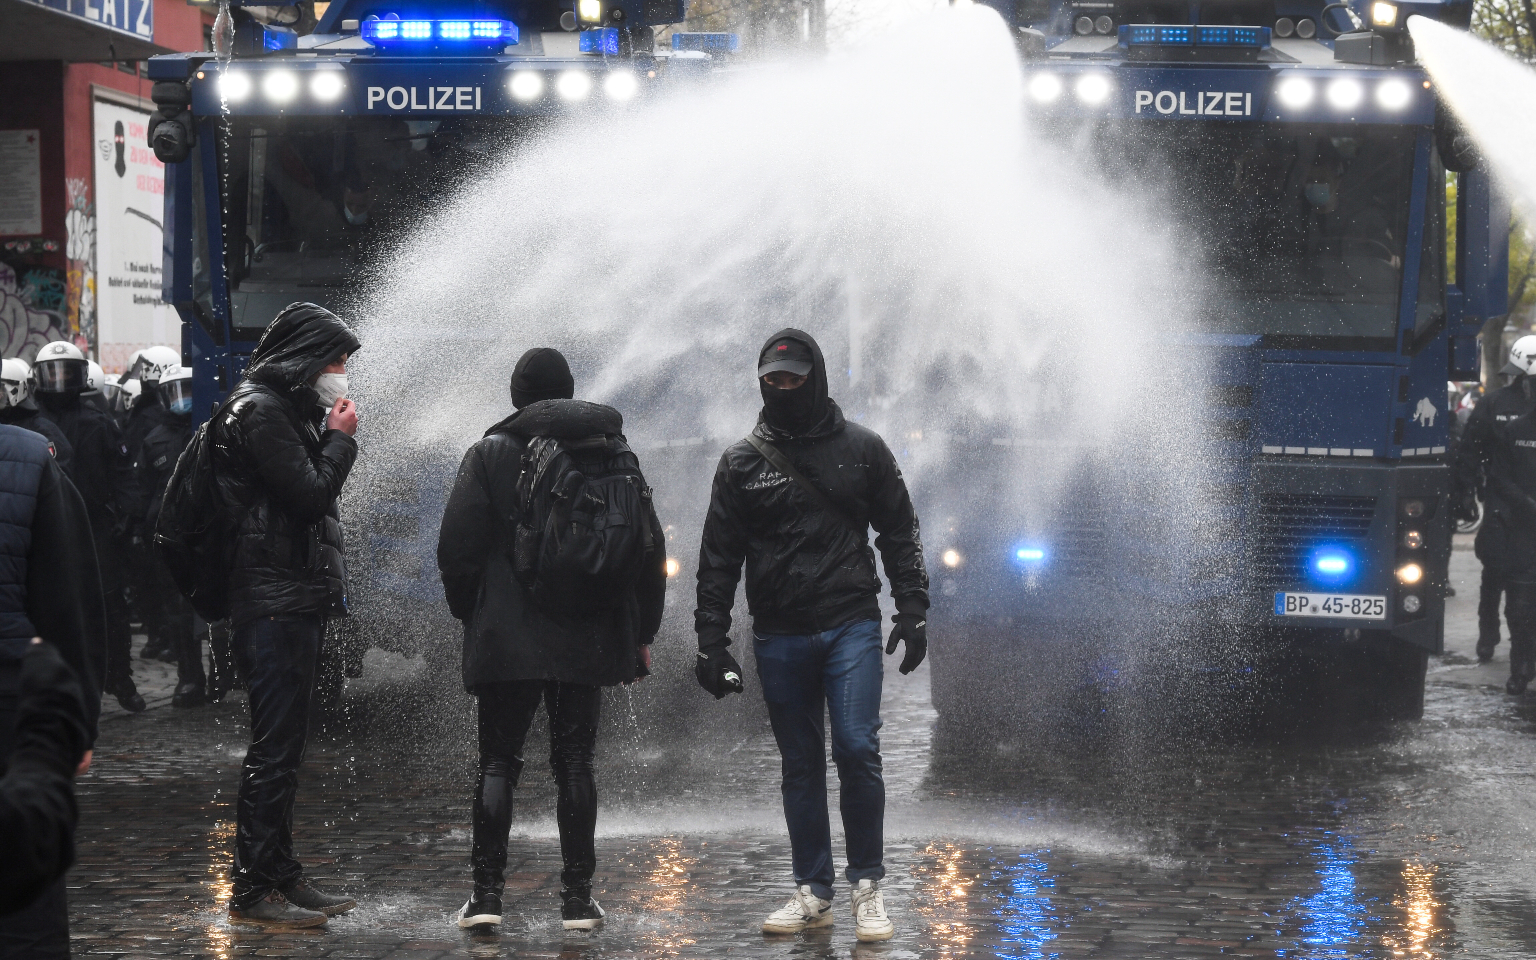 Демонстрации в крупных городах Европы переросли в столкновения с полицией